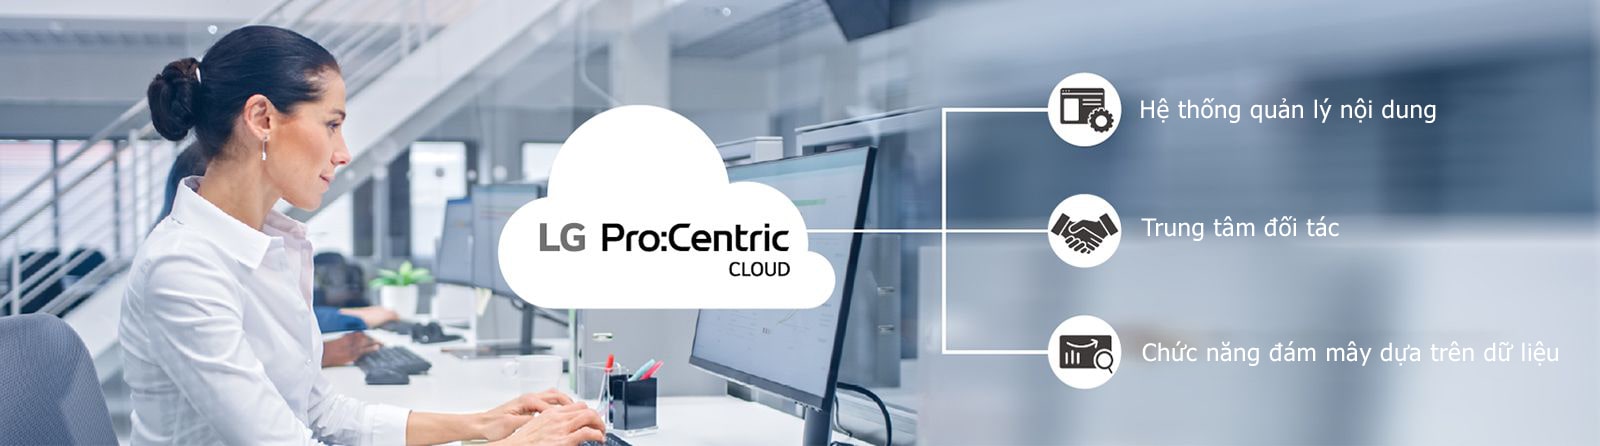 Người phụ nữ đang làm việc thông qua Pro:Centric Cloud.